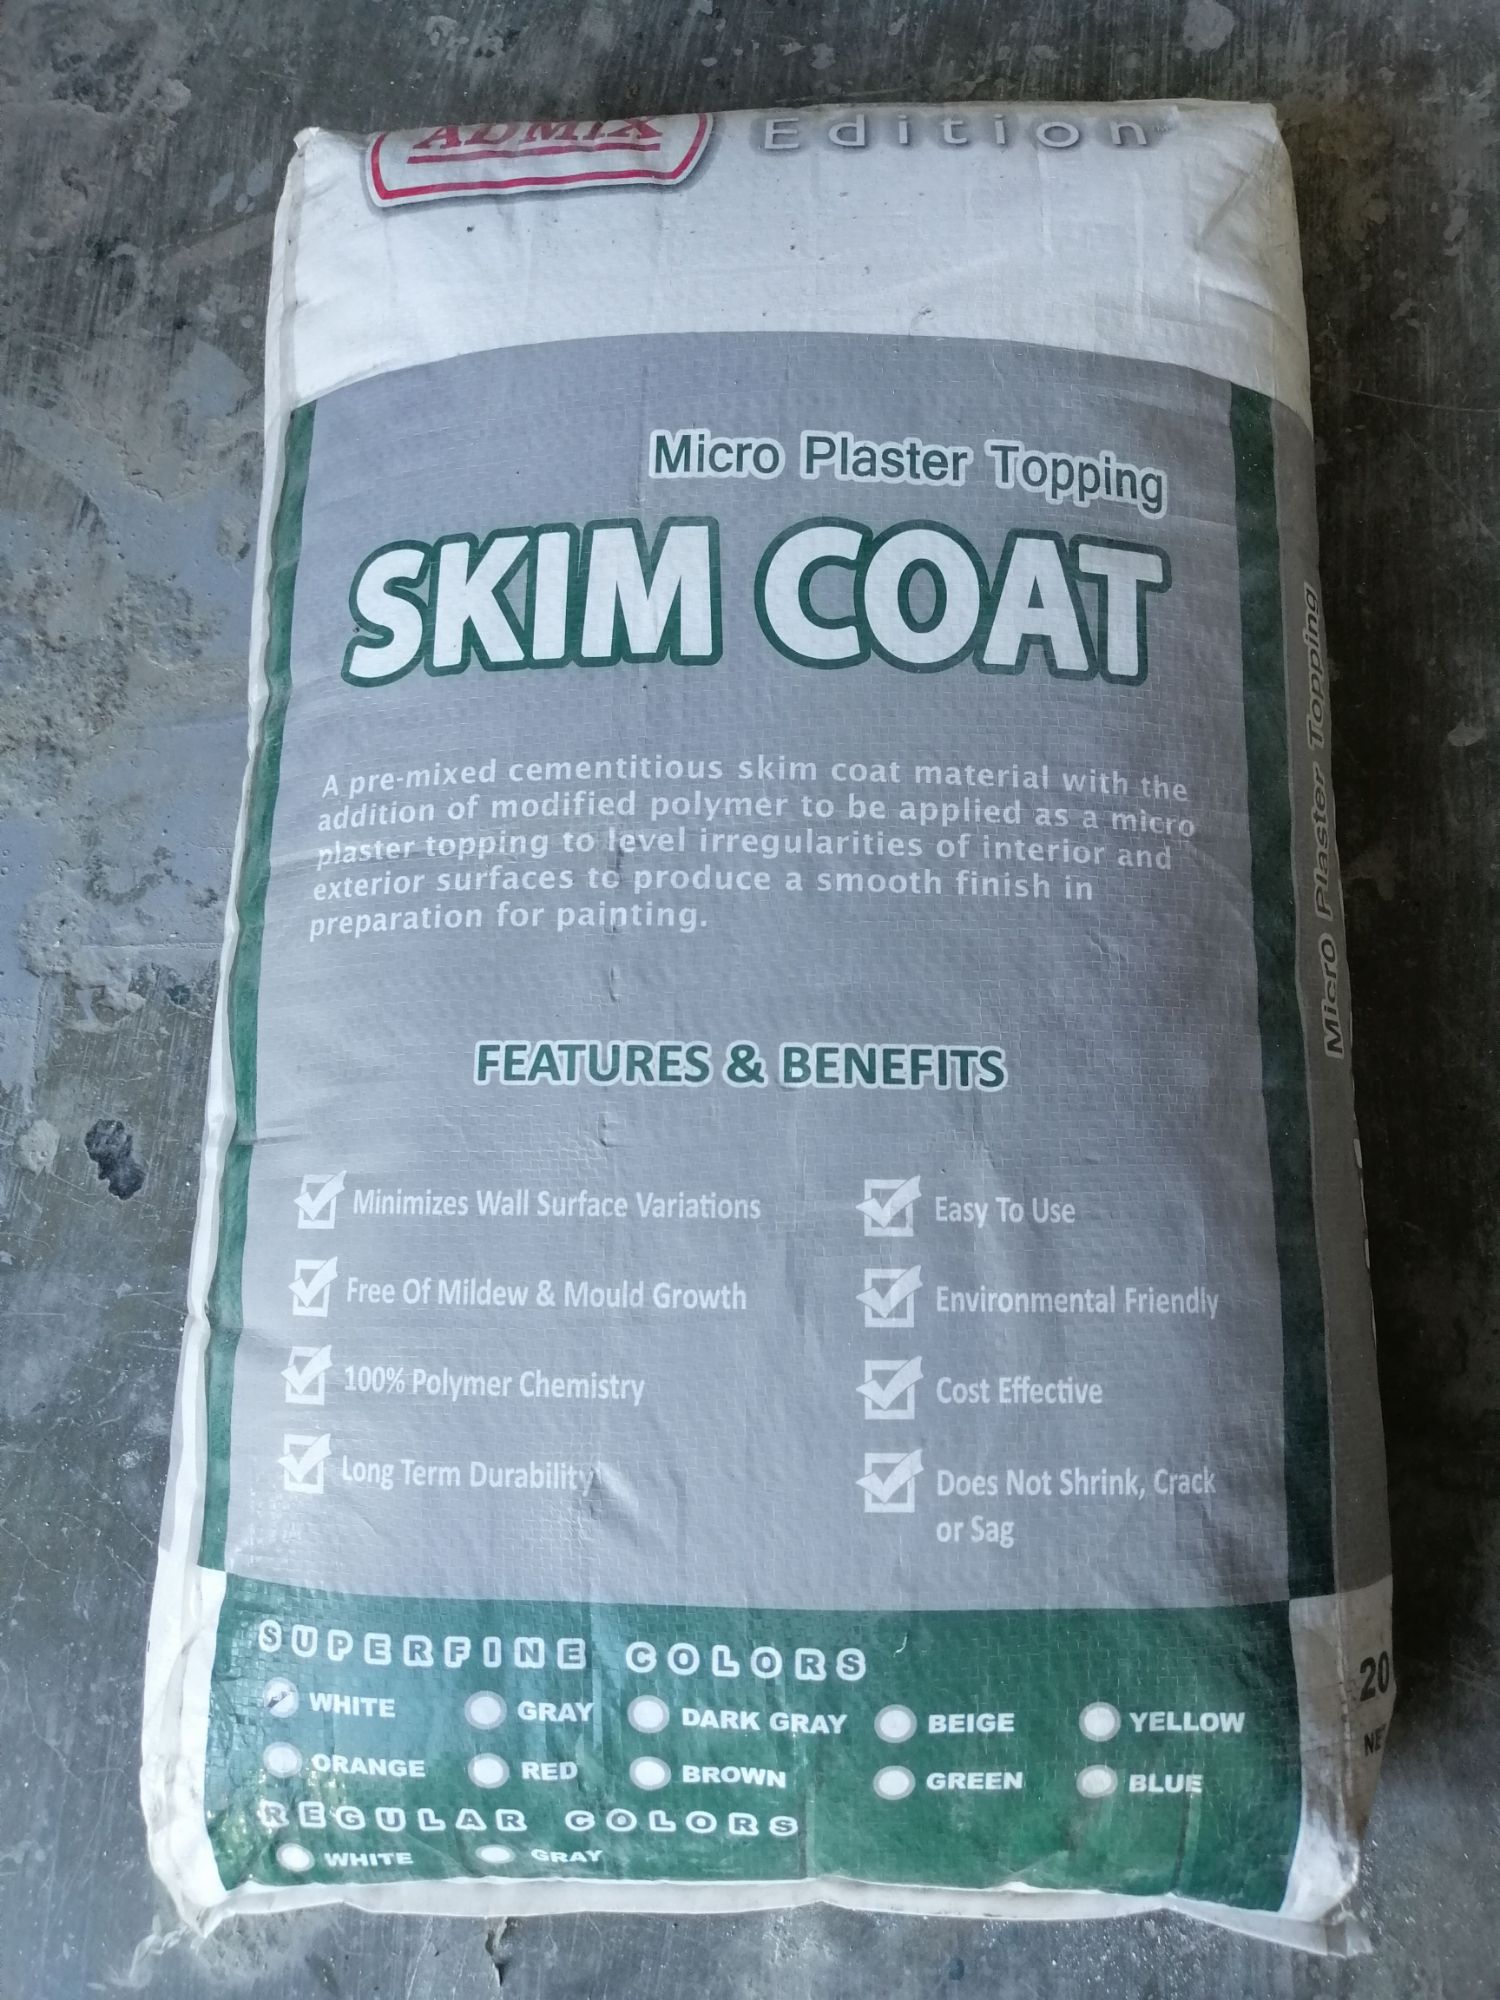 Skim coat